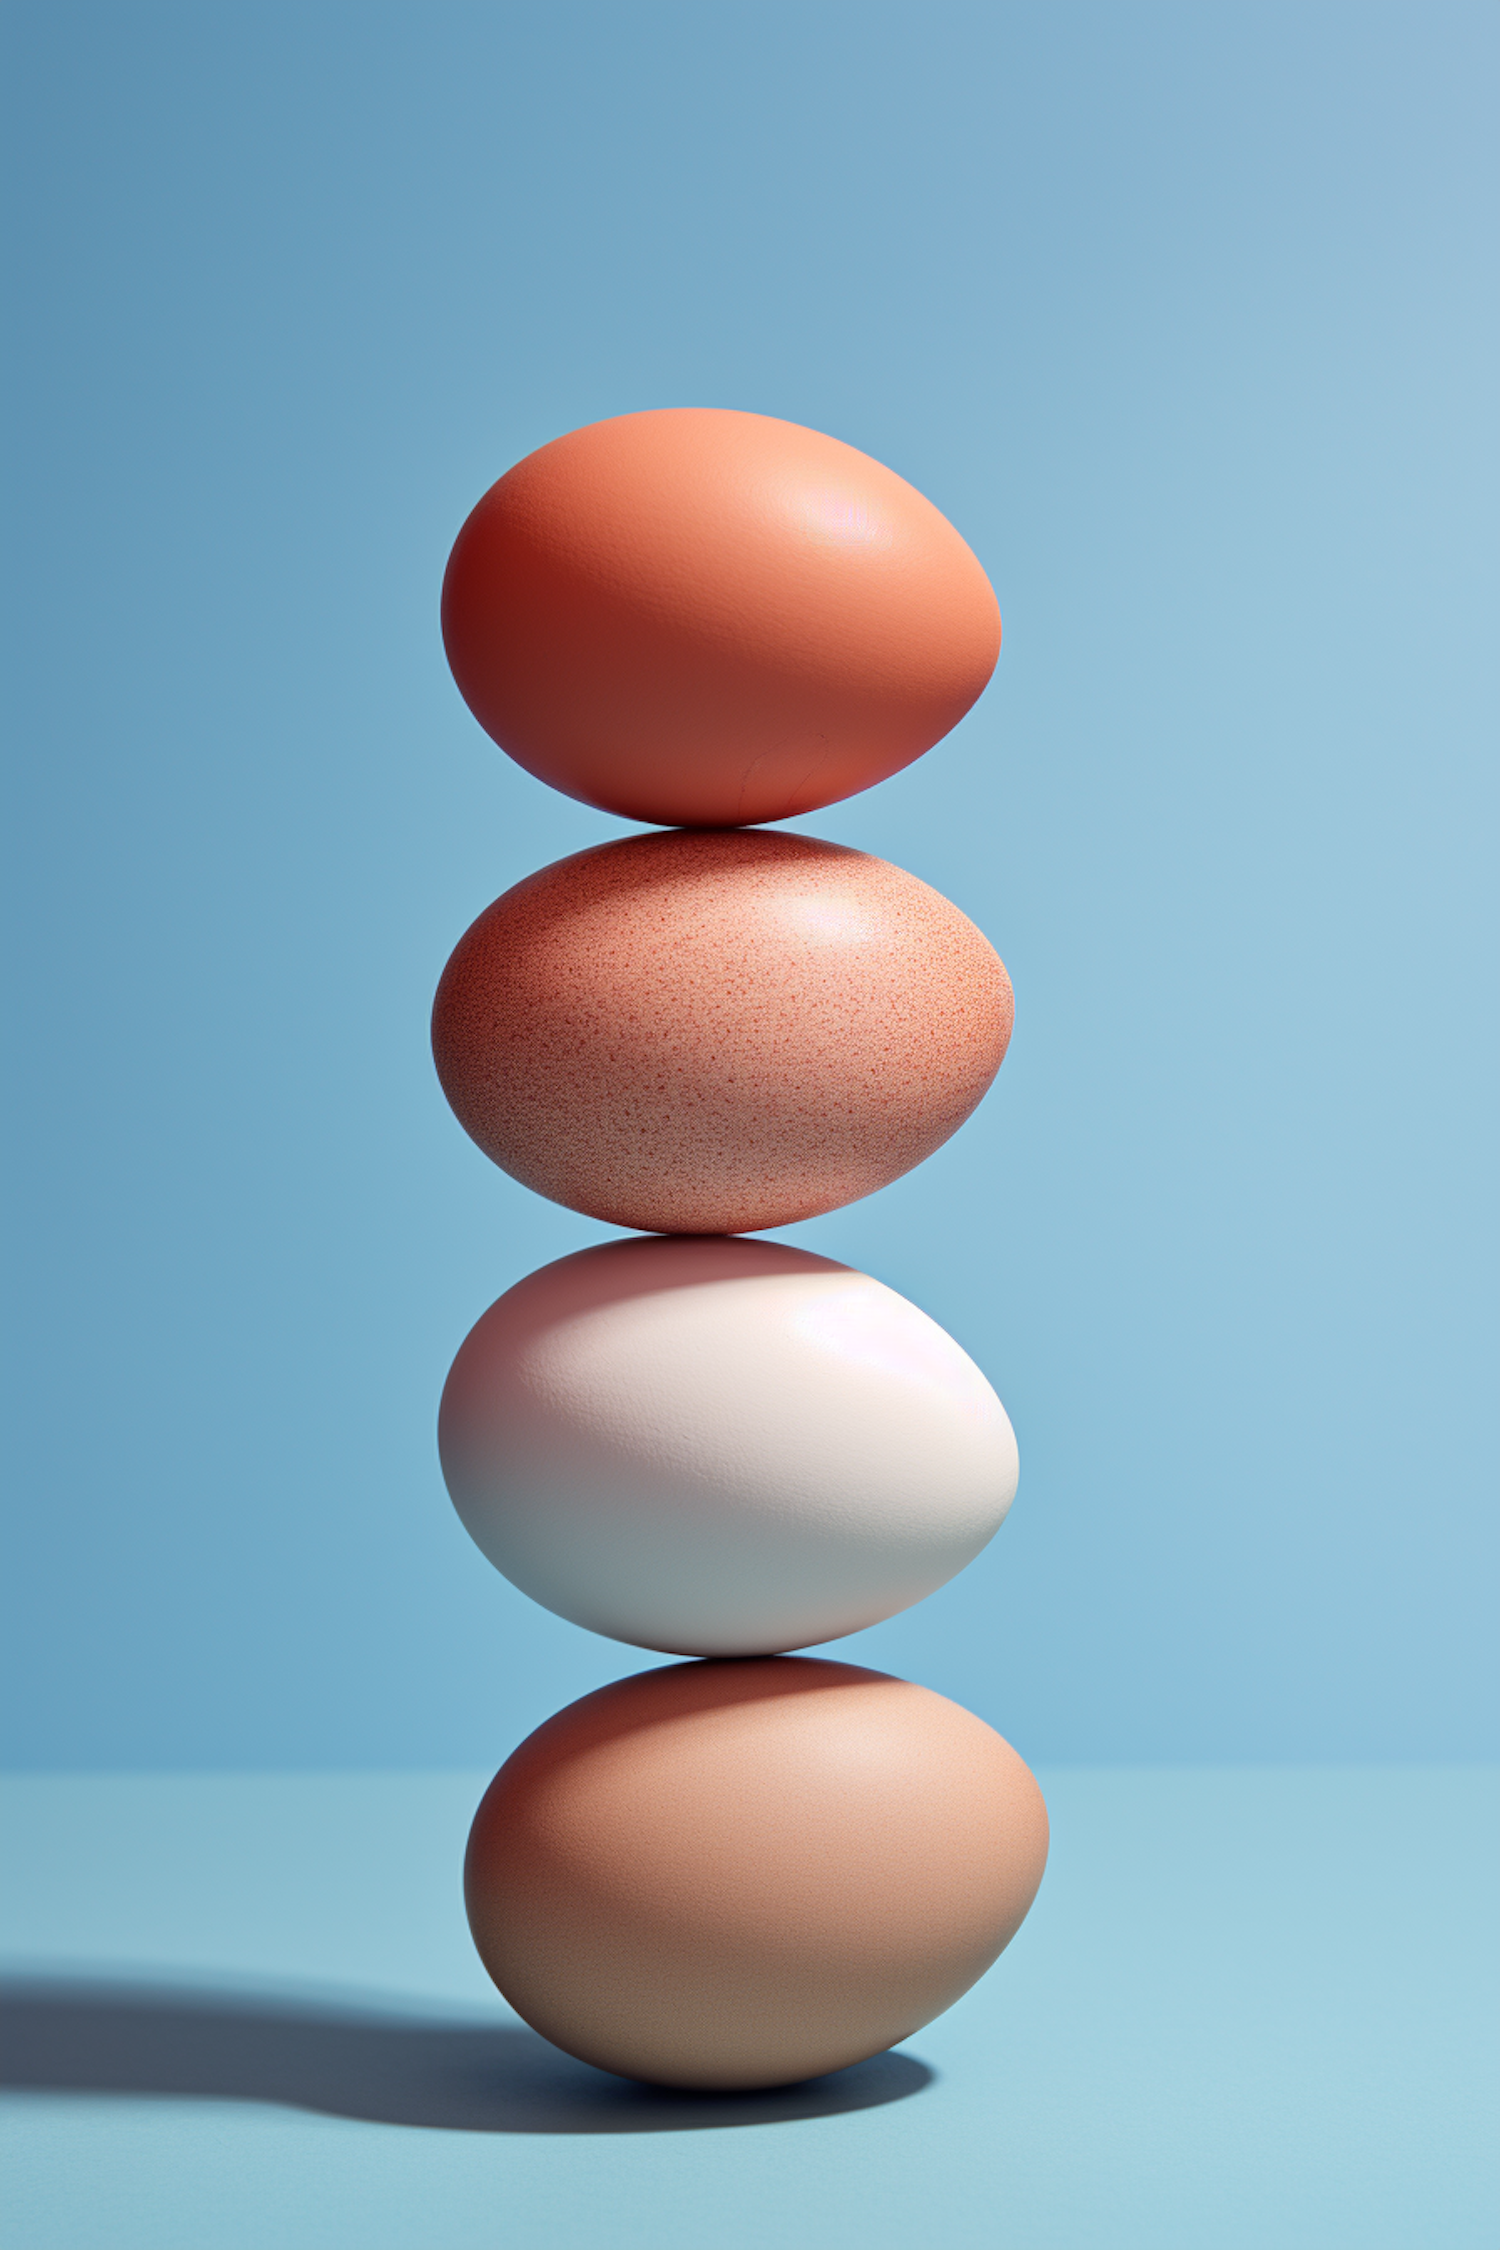 Precarious Equilibrium - Spectrum of Speckled Eggs